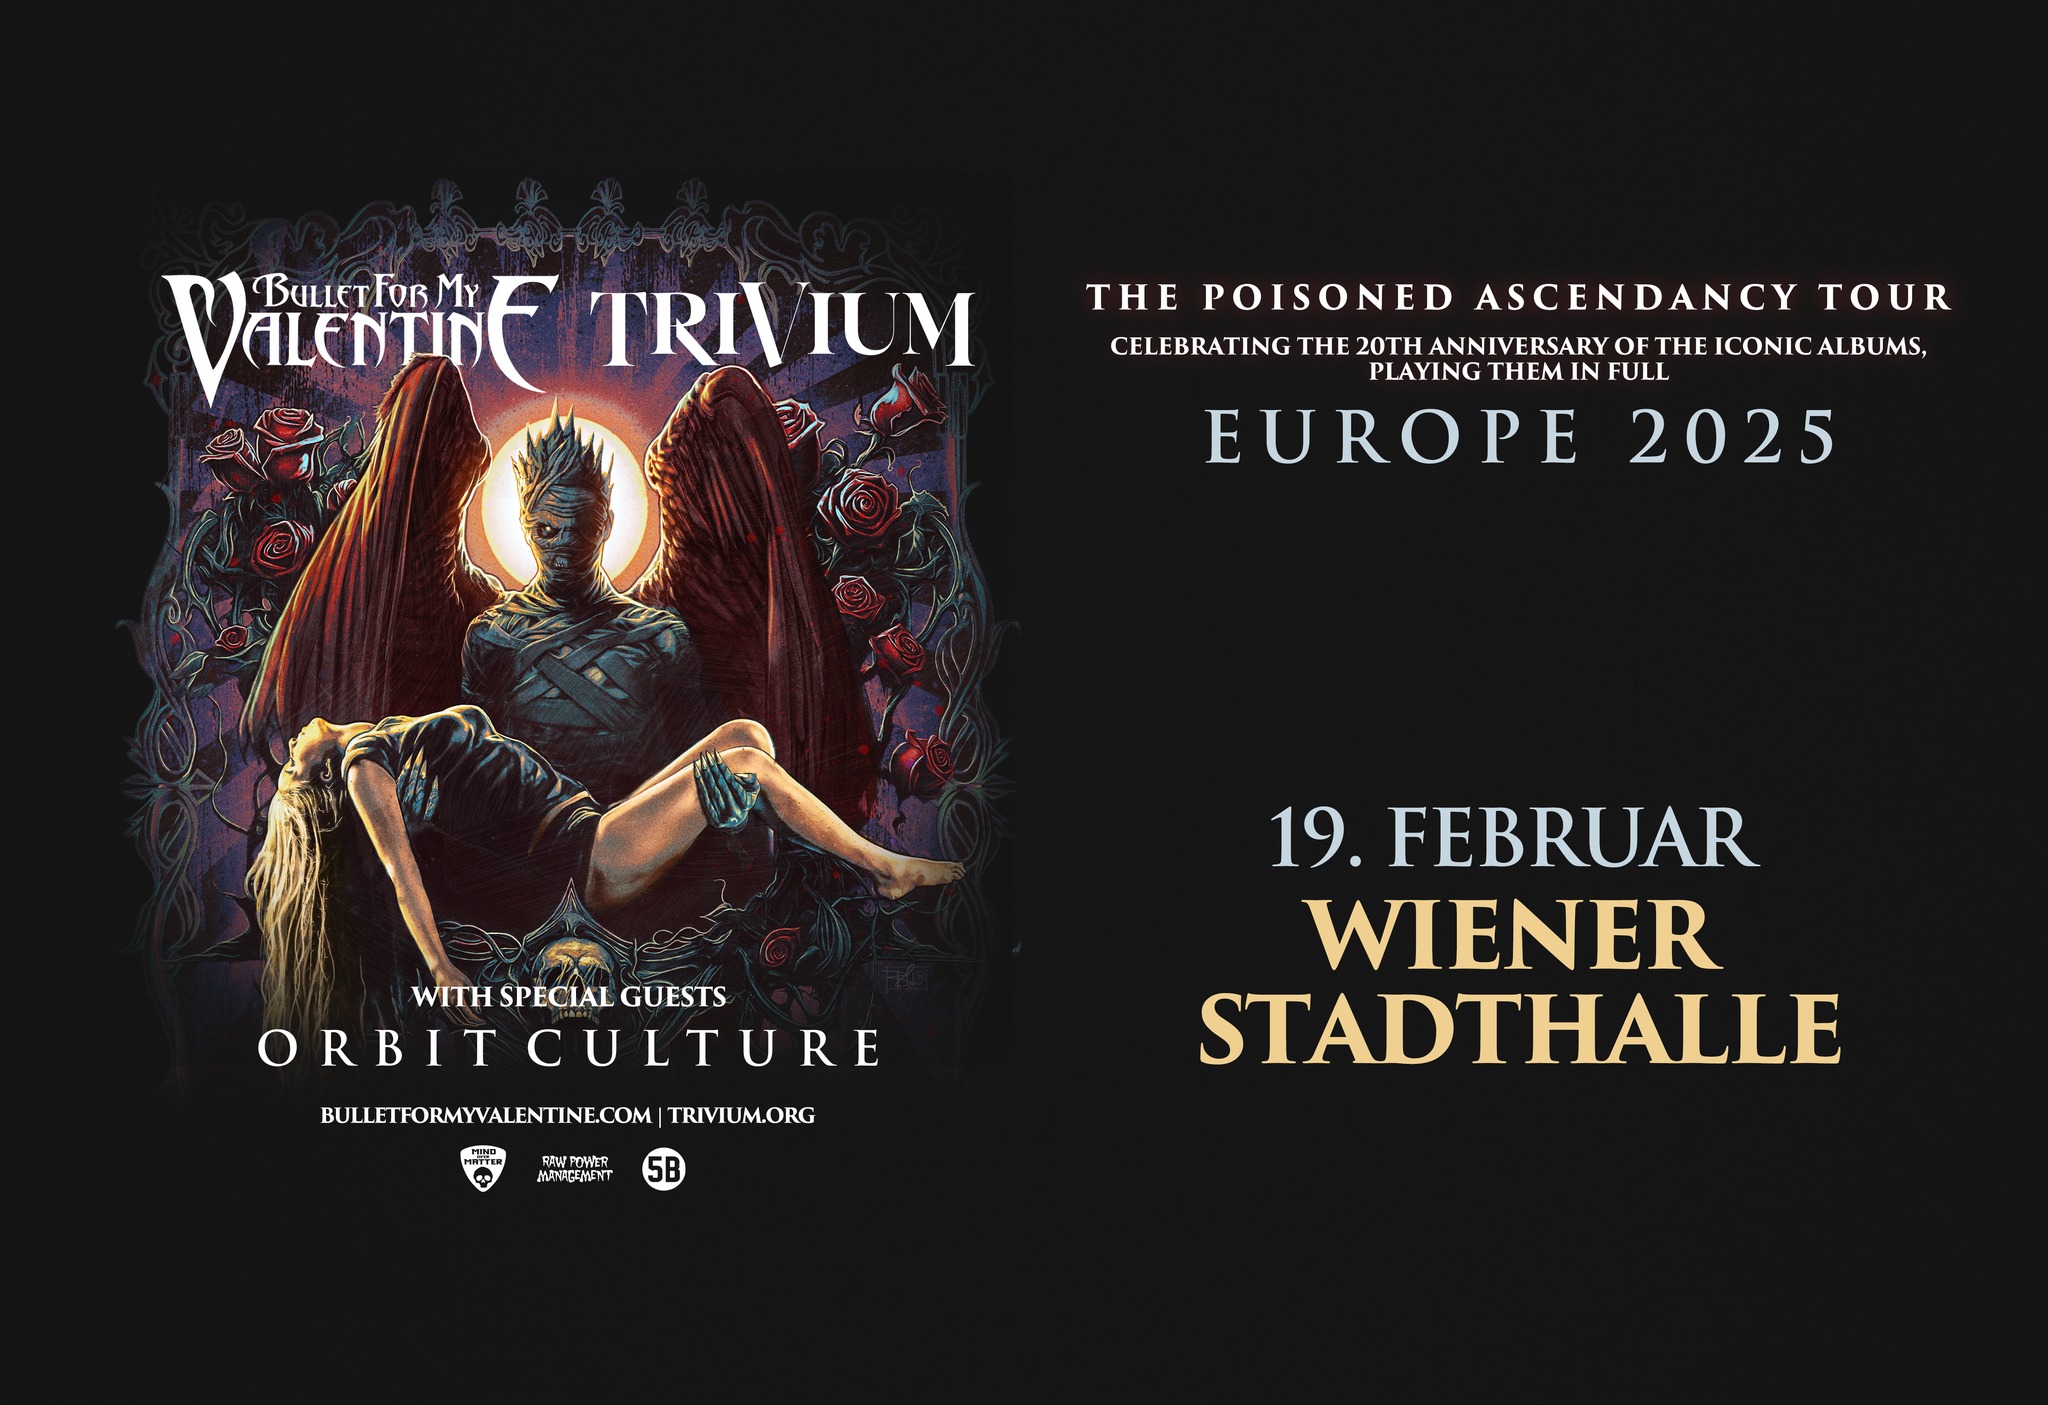 Bullet For My Valentine & Trivium am 19. February 2025 @ Wiener Stadthalle.